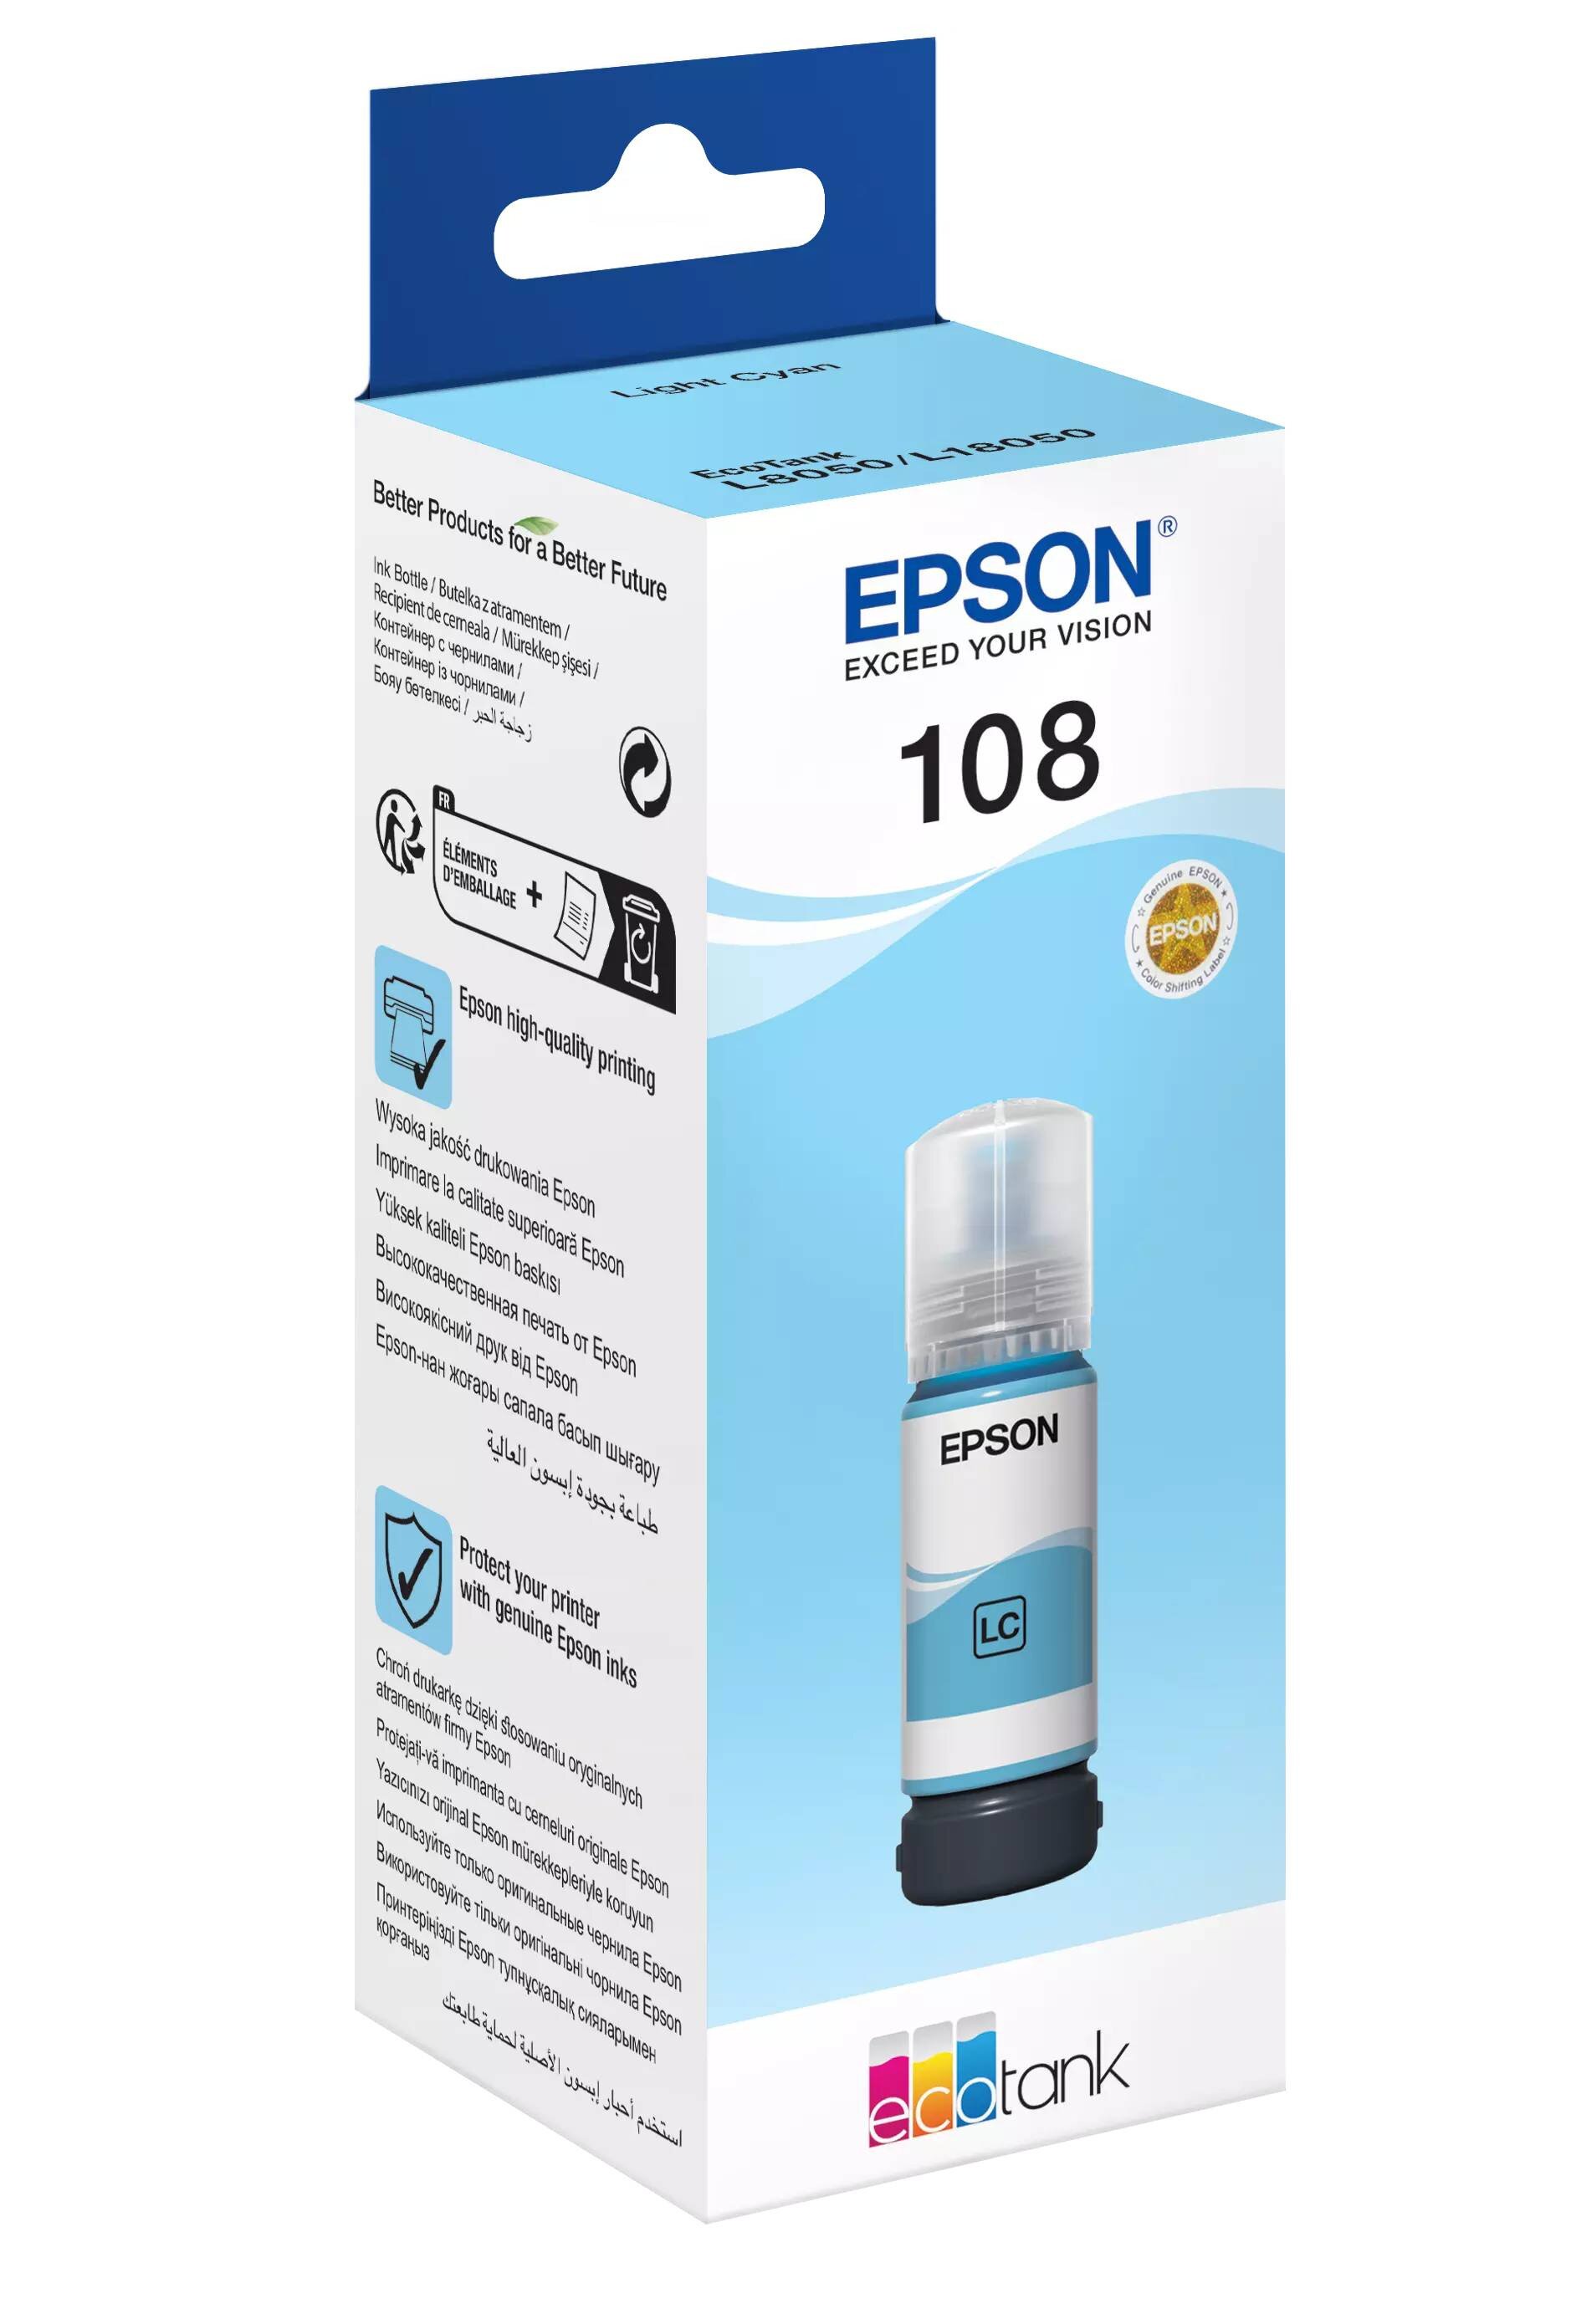 Buy Epson 108 Ecotank Ink Bottle Light Cyan Online In Pakistan Tejarpk 0336